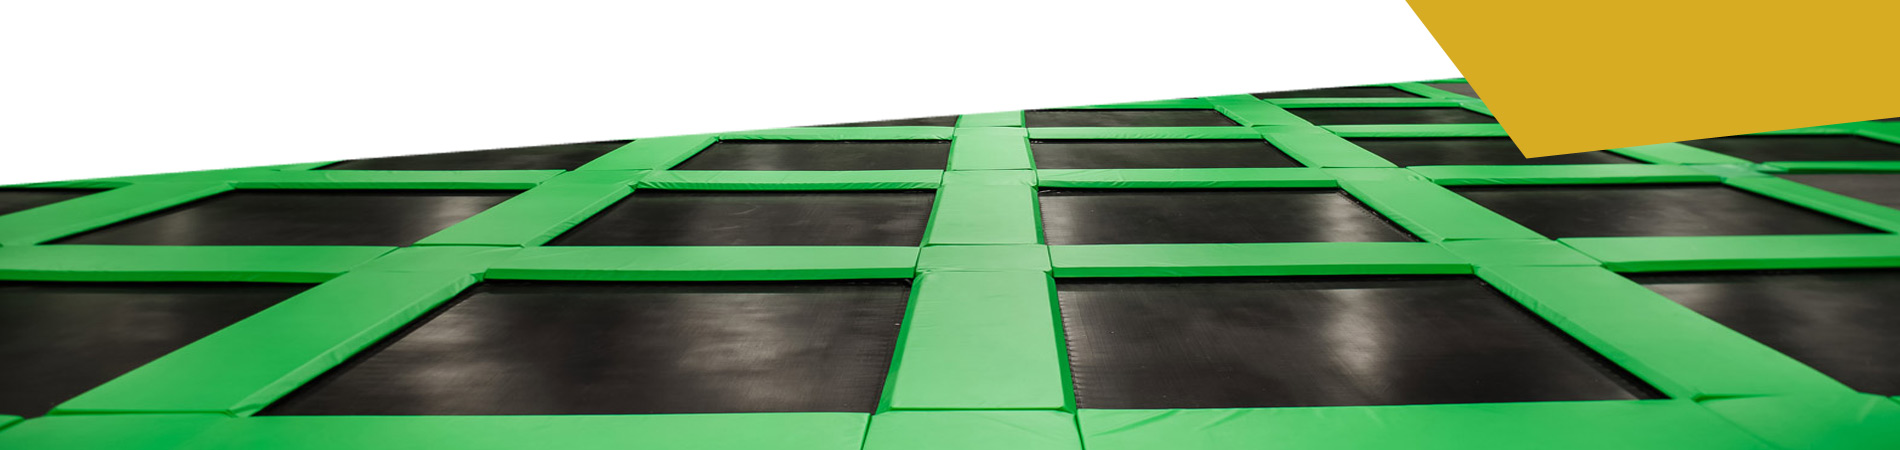 salle-trampoline1